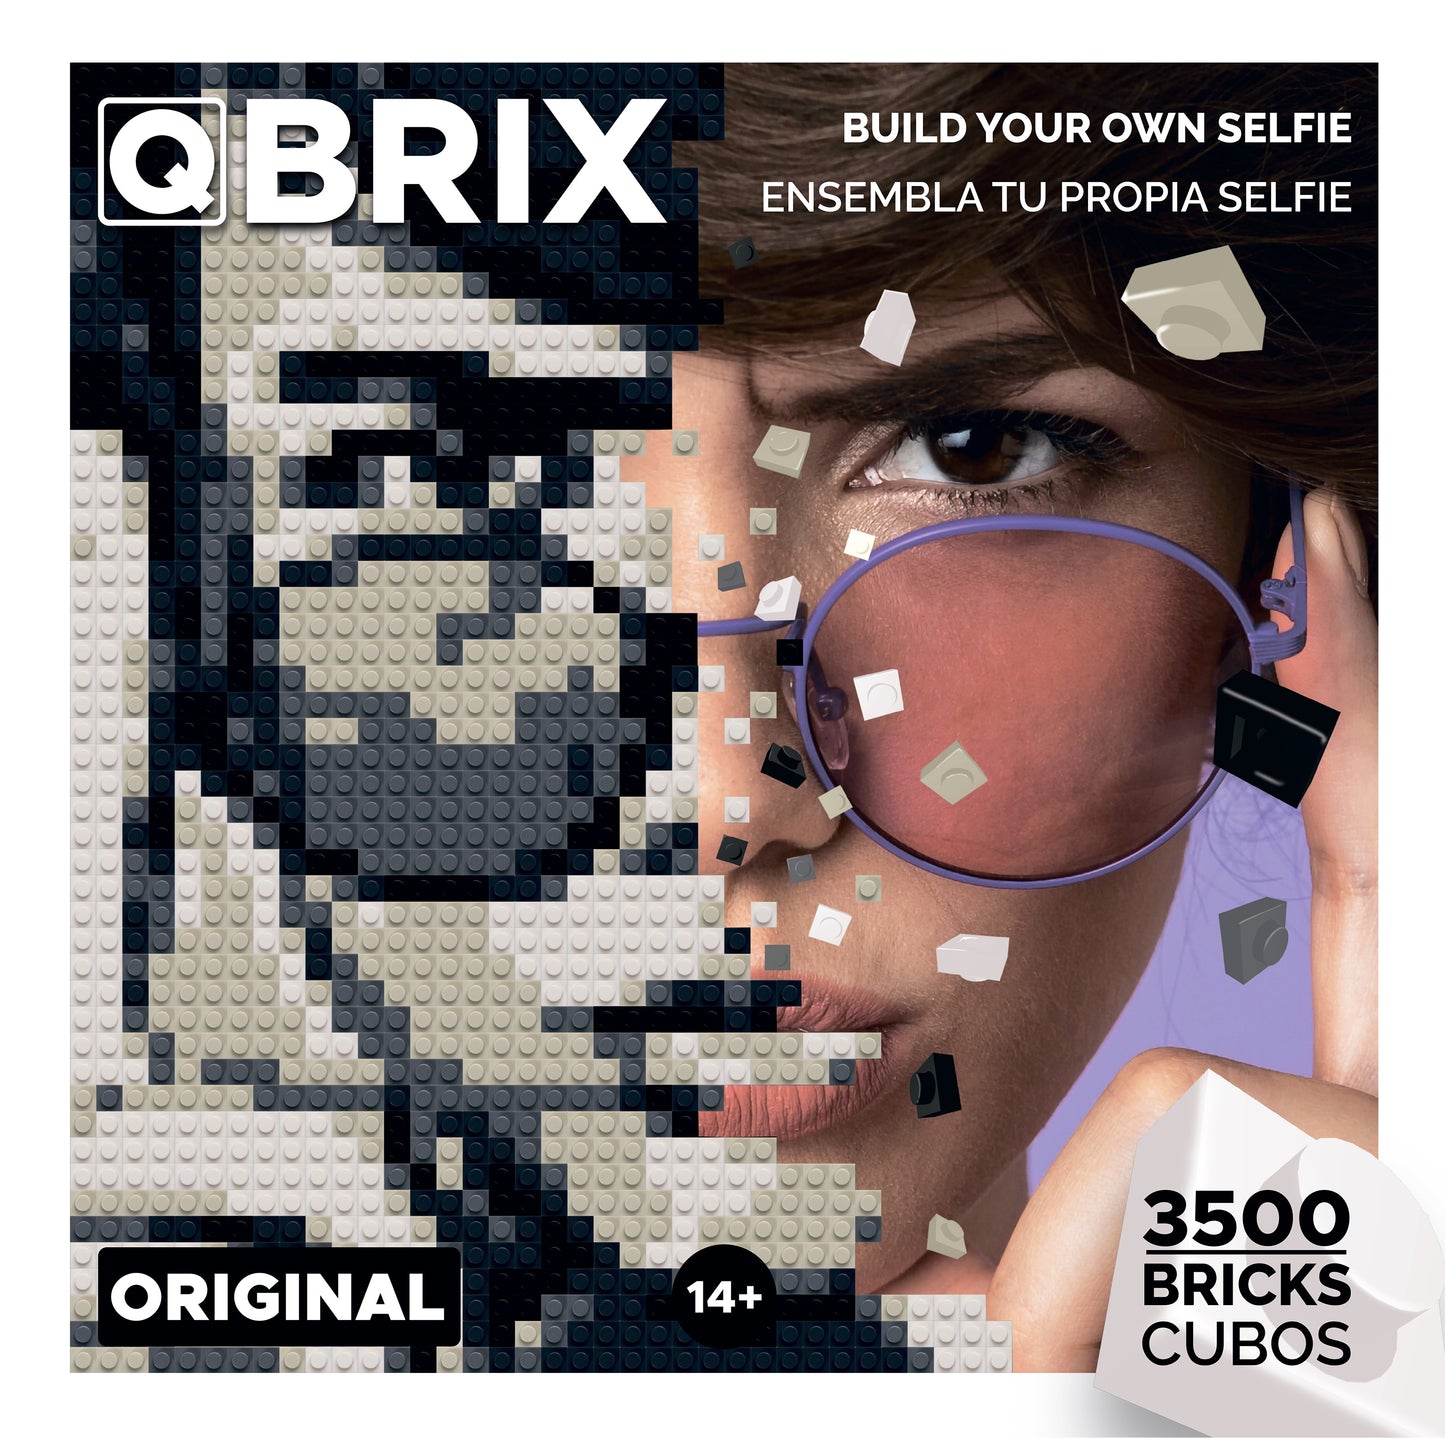 QBRIX Original